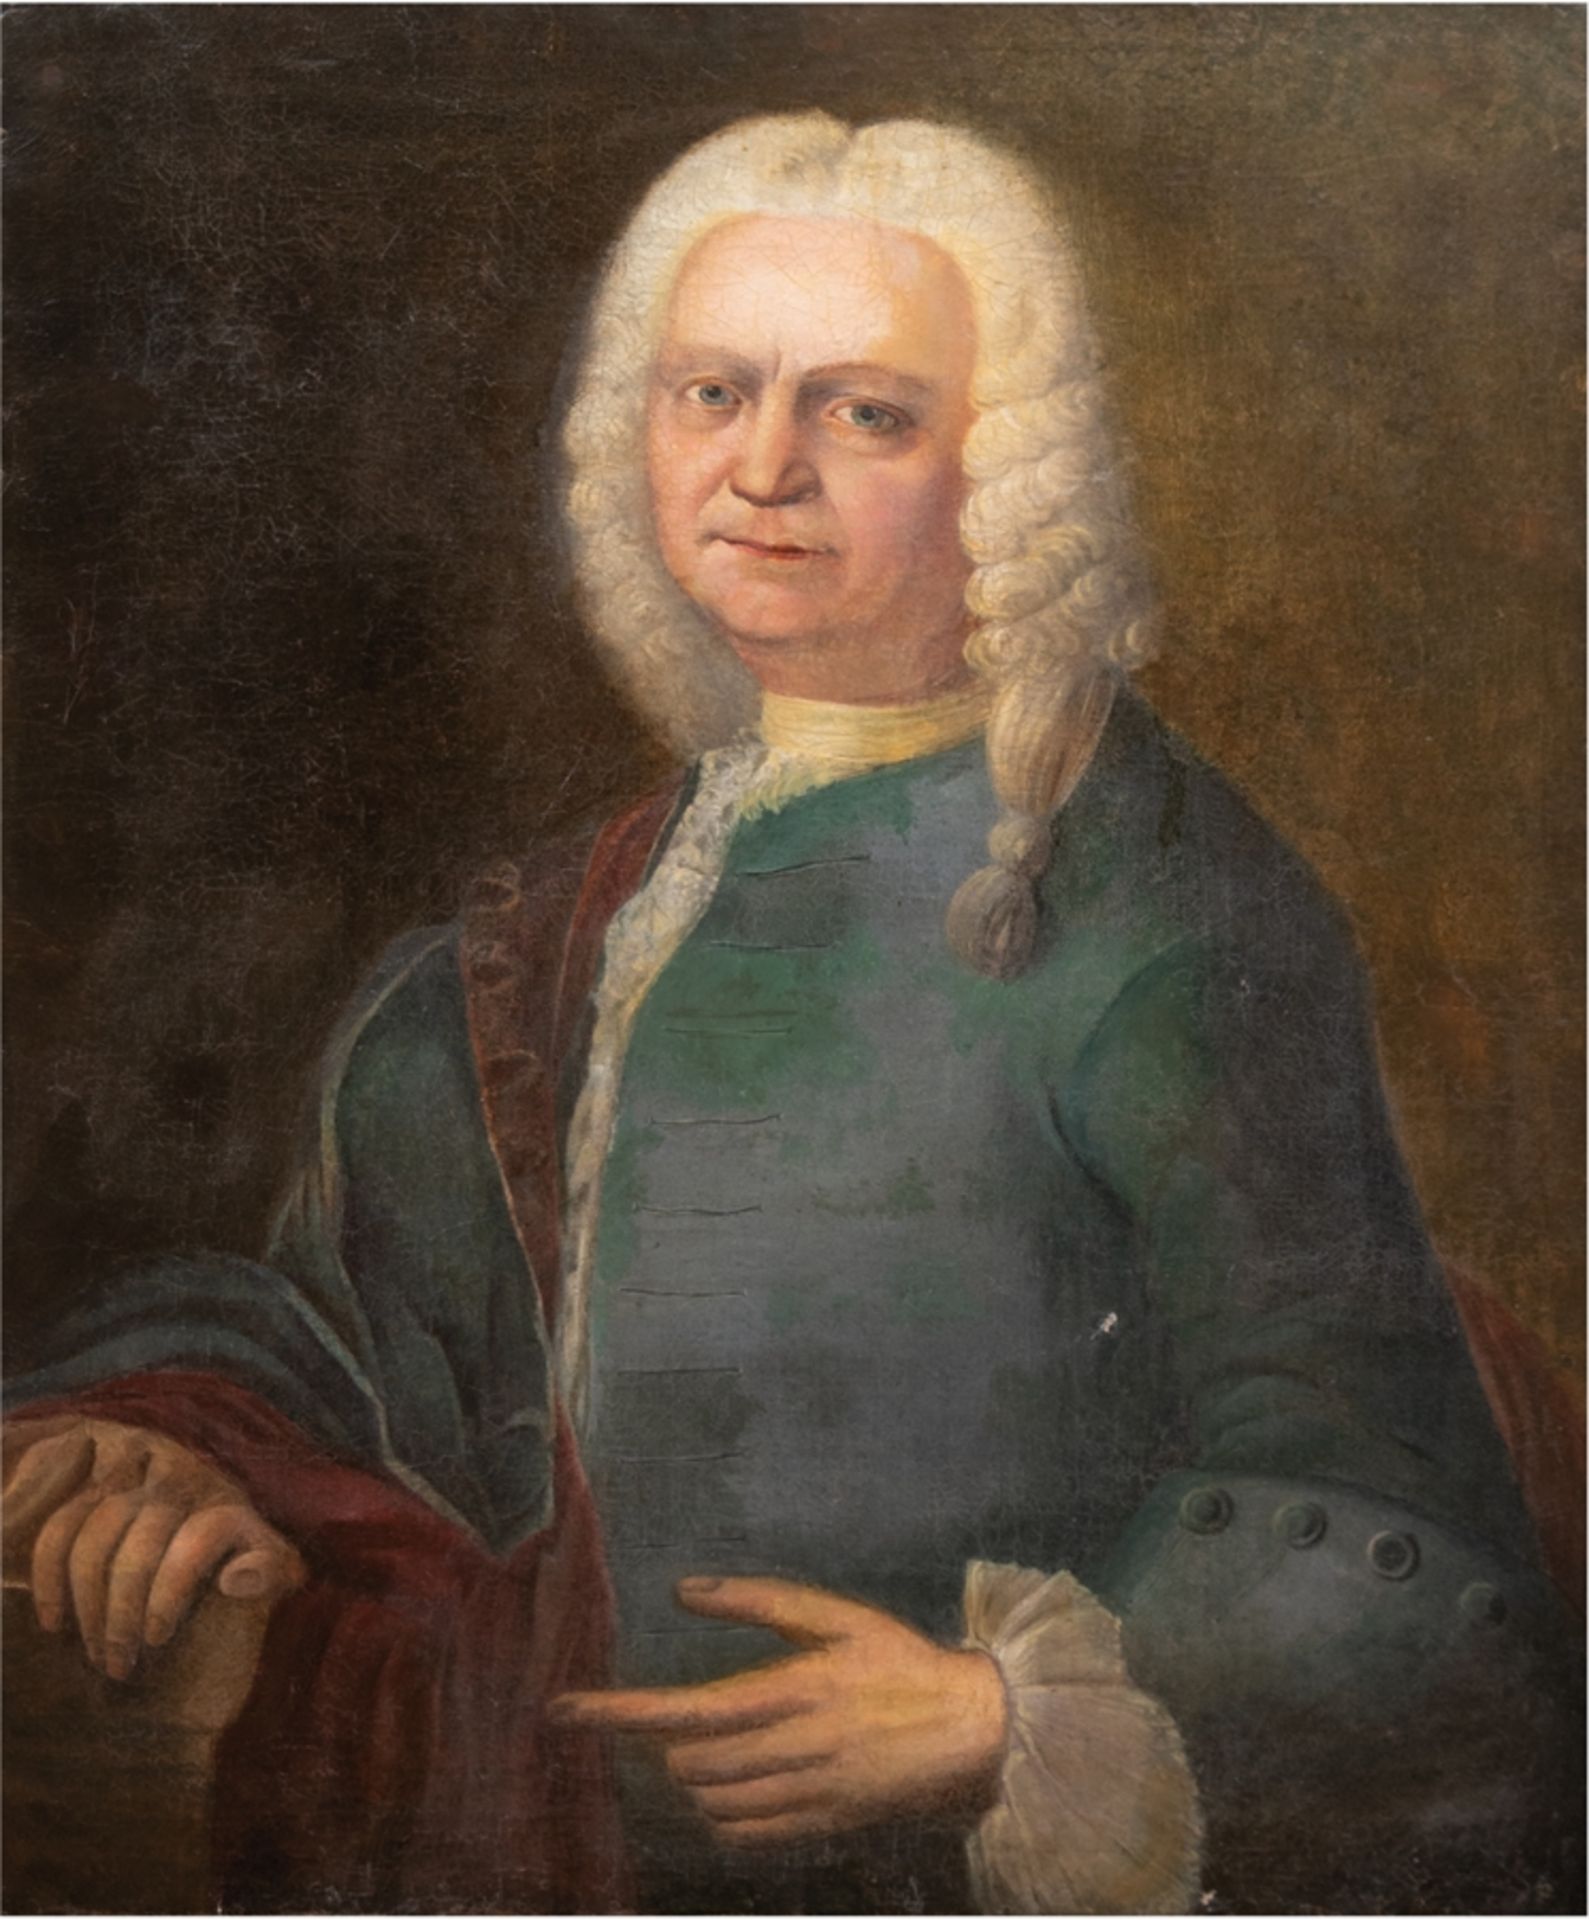 Porträtist des 18. Jh. "Porträt von Johann Caspar Nising", Öl/Lw. , unsigniert, rücks. Angaben zum 